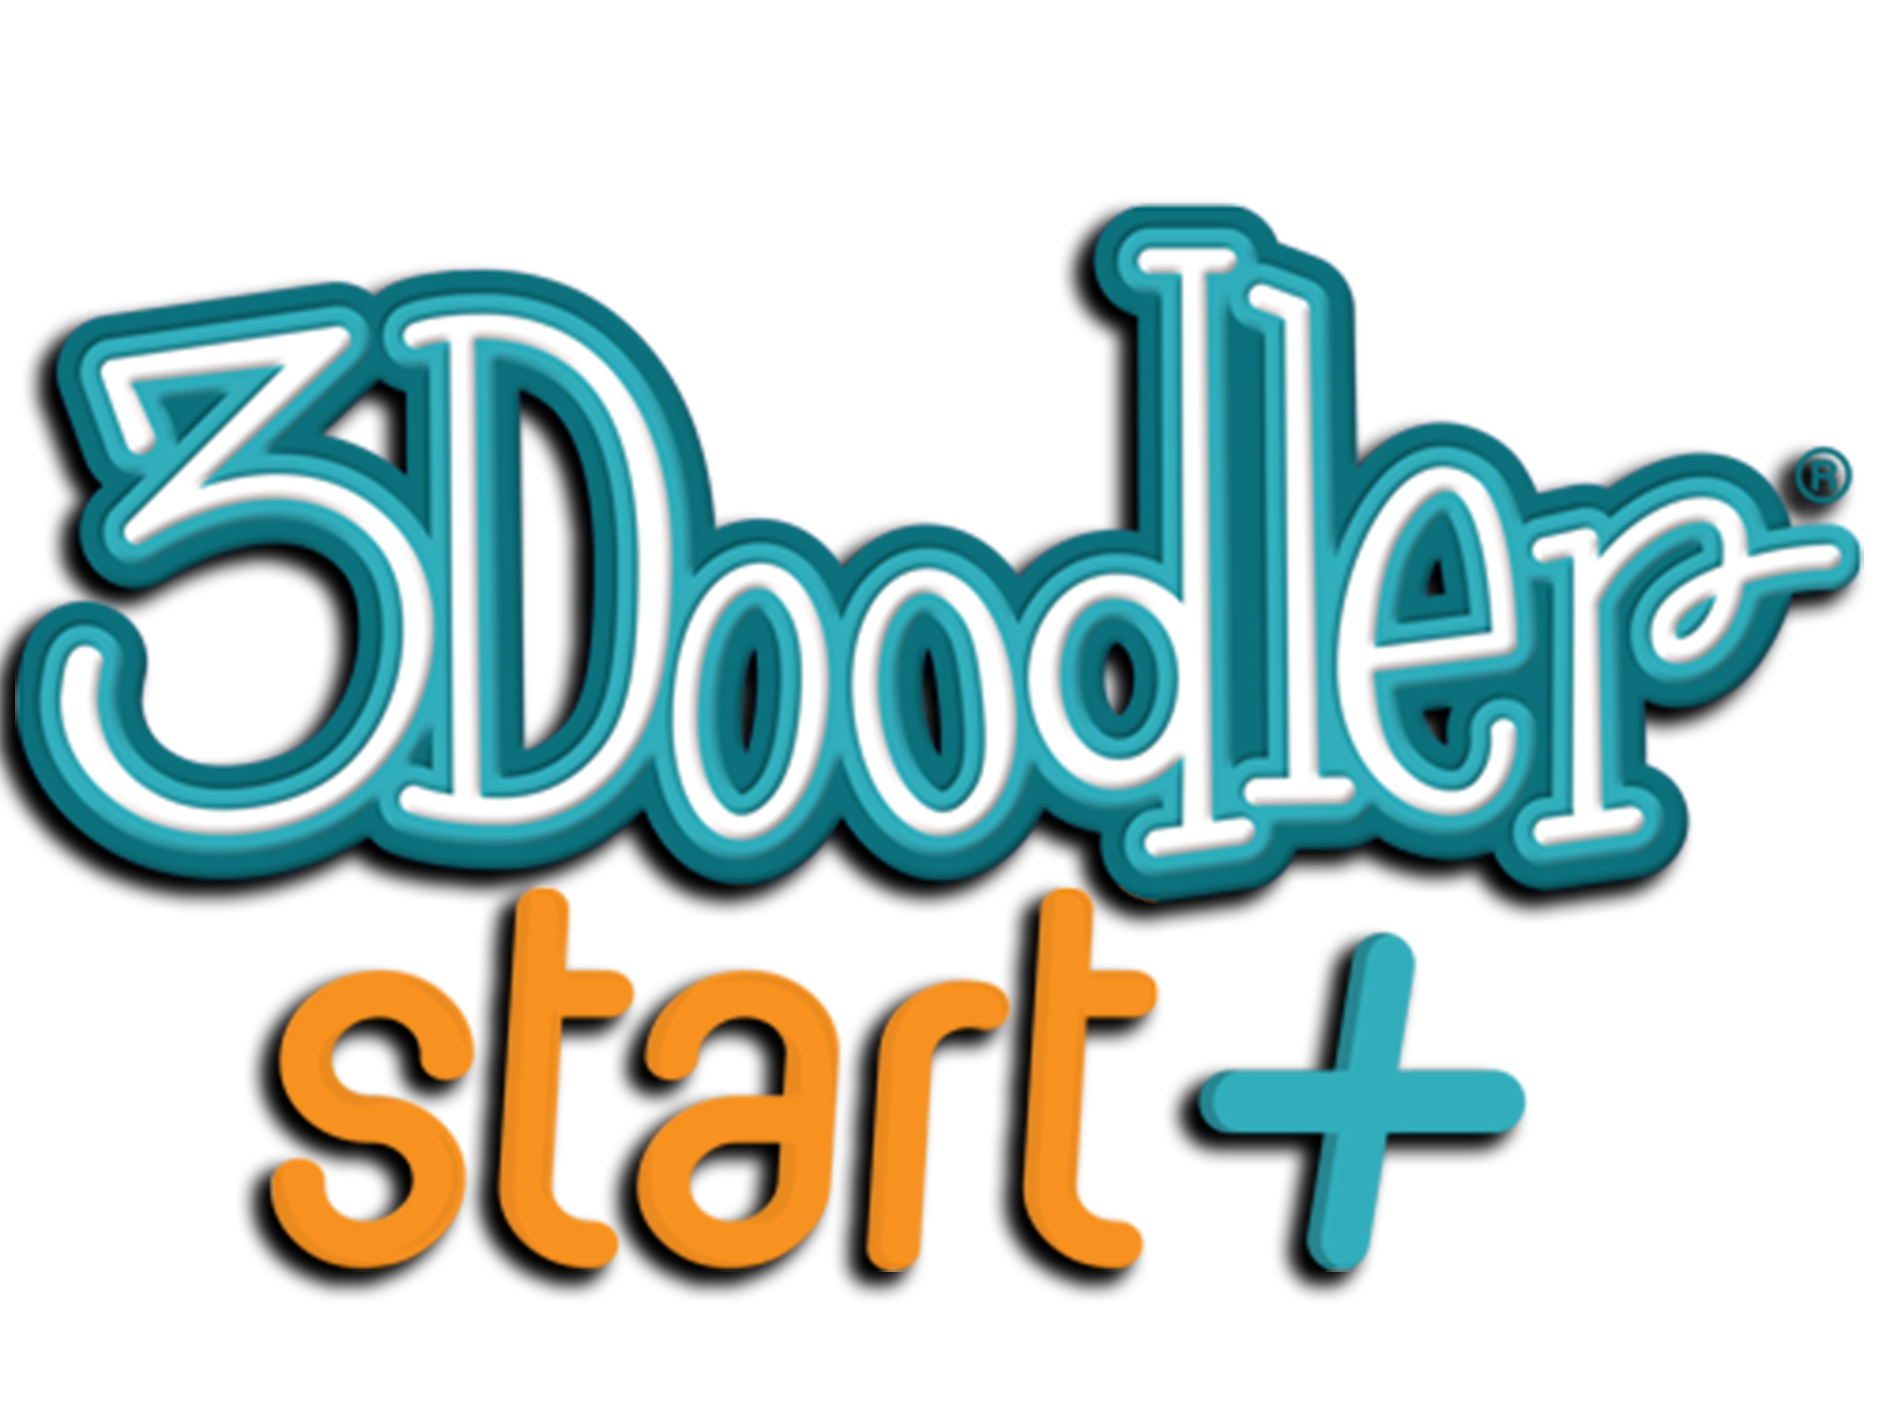 3Doodler Start Christmas Offer Get Upto 50% Discount